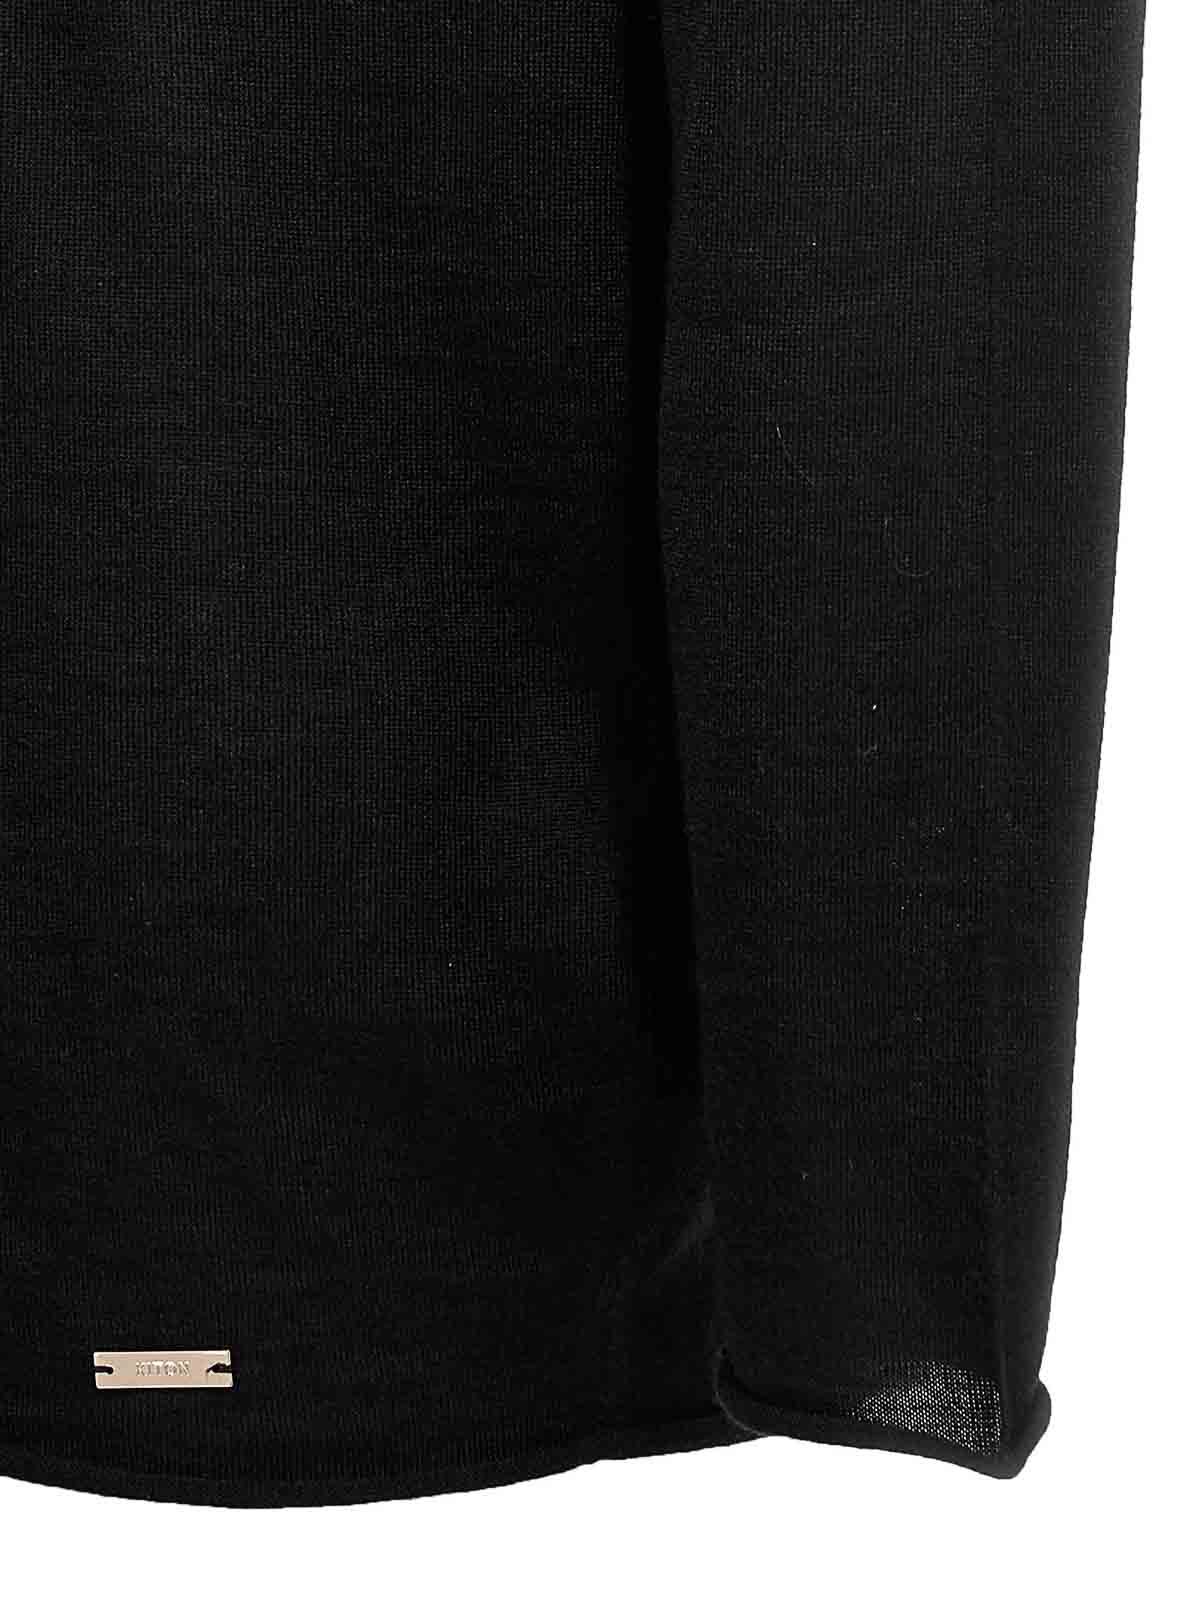 Shop Kiton Turtleneck Sweater In Black